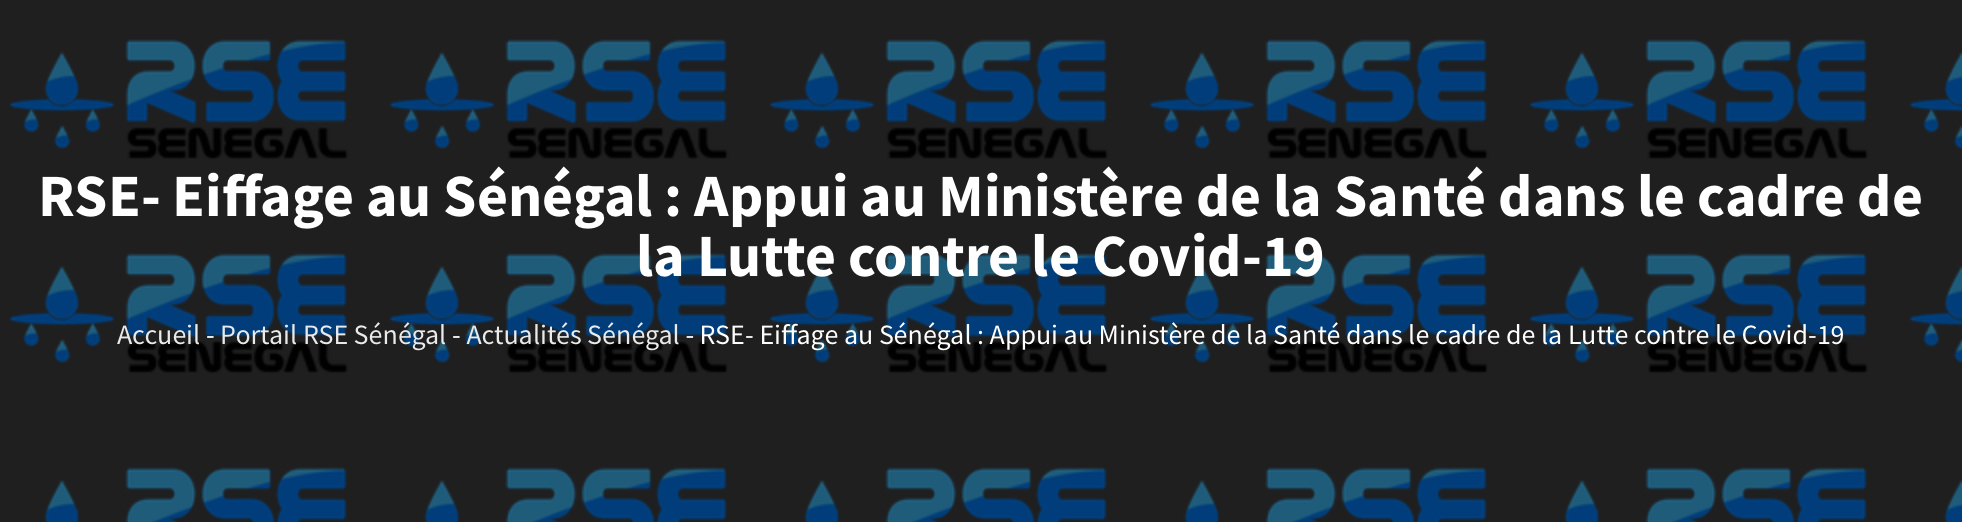 Eiffage au Sénégal : appui au ministère de la Santé dans le cadre de la lutte contre le Covid-19